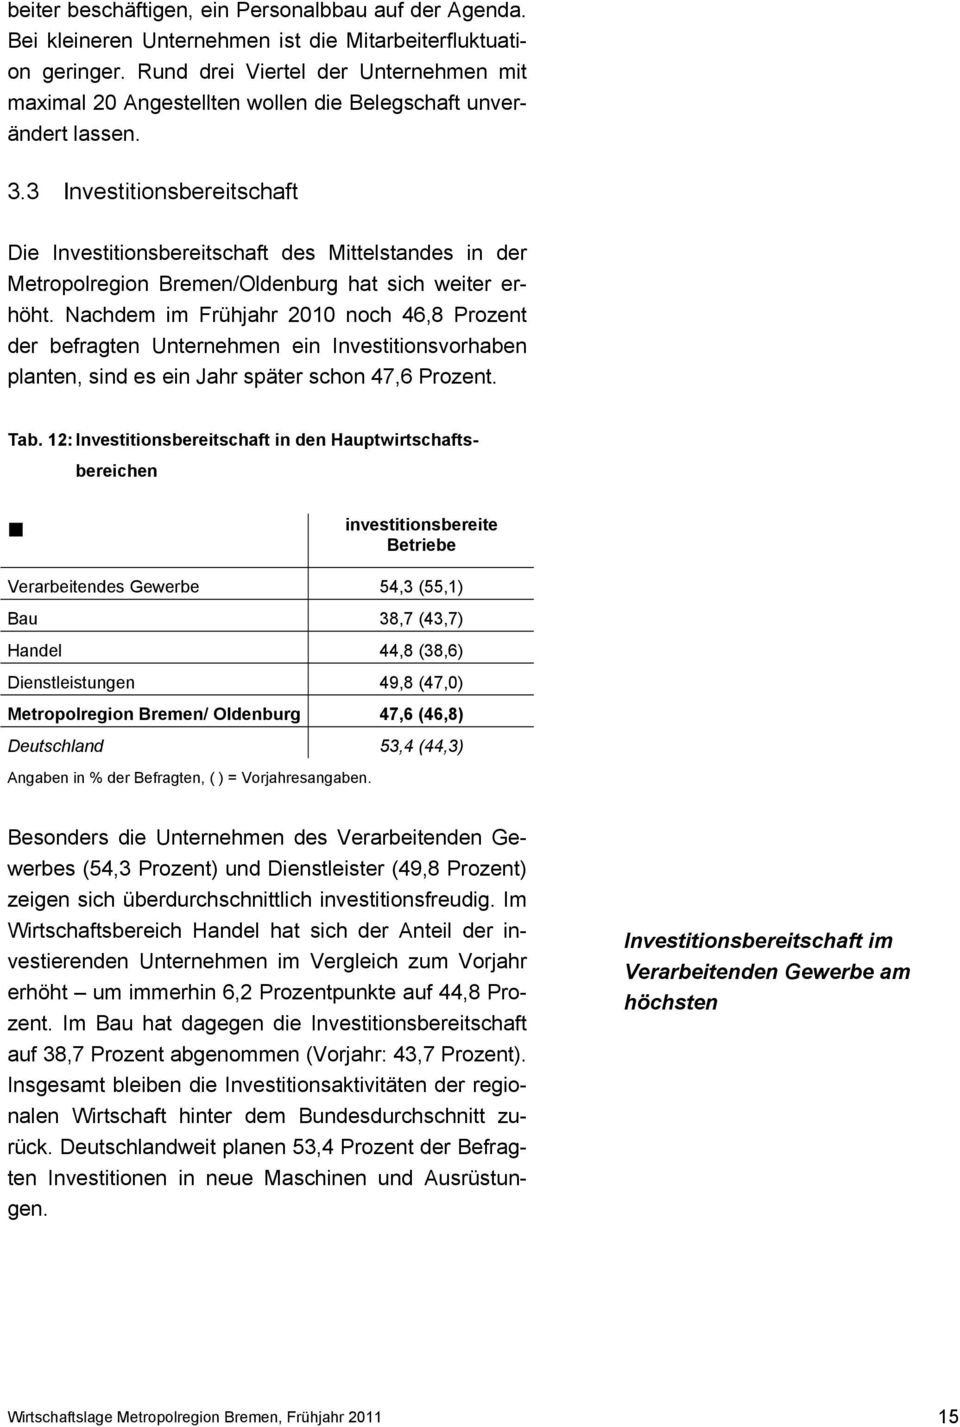 3 Investitionsbereitschaft Die Investitionsbereitschaft des Mittelstandes in der Metropolreion Bremen/Oldenbur hat sich weiter erhöht.